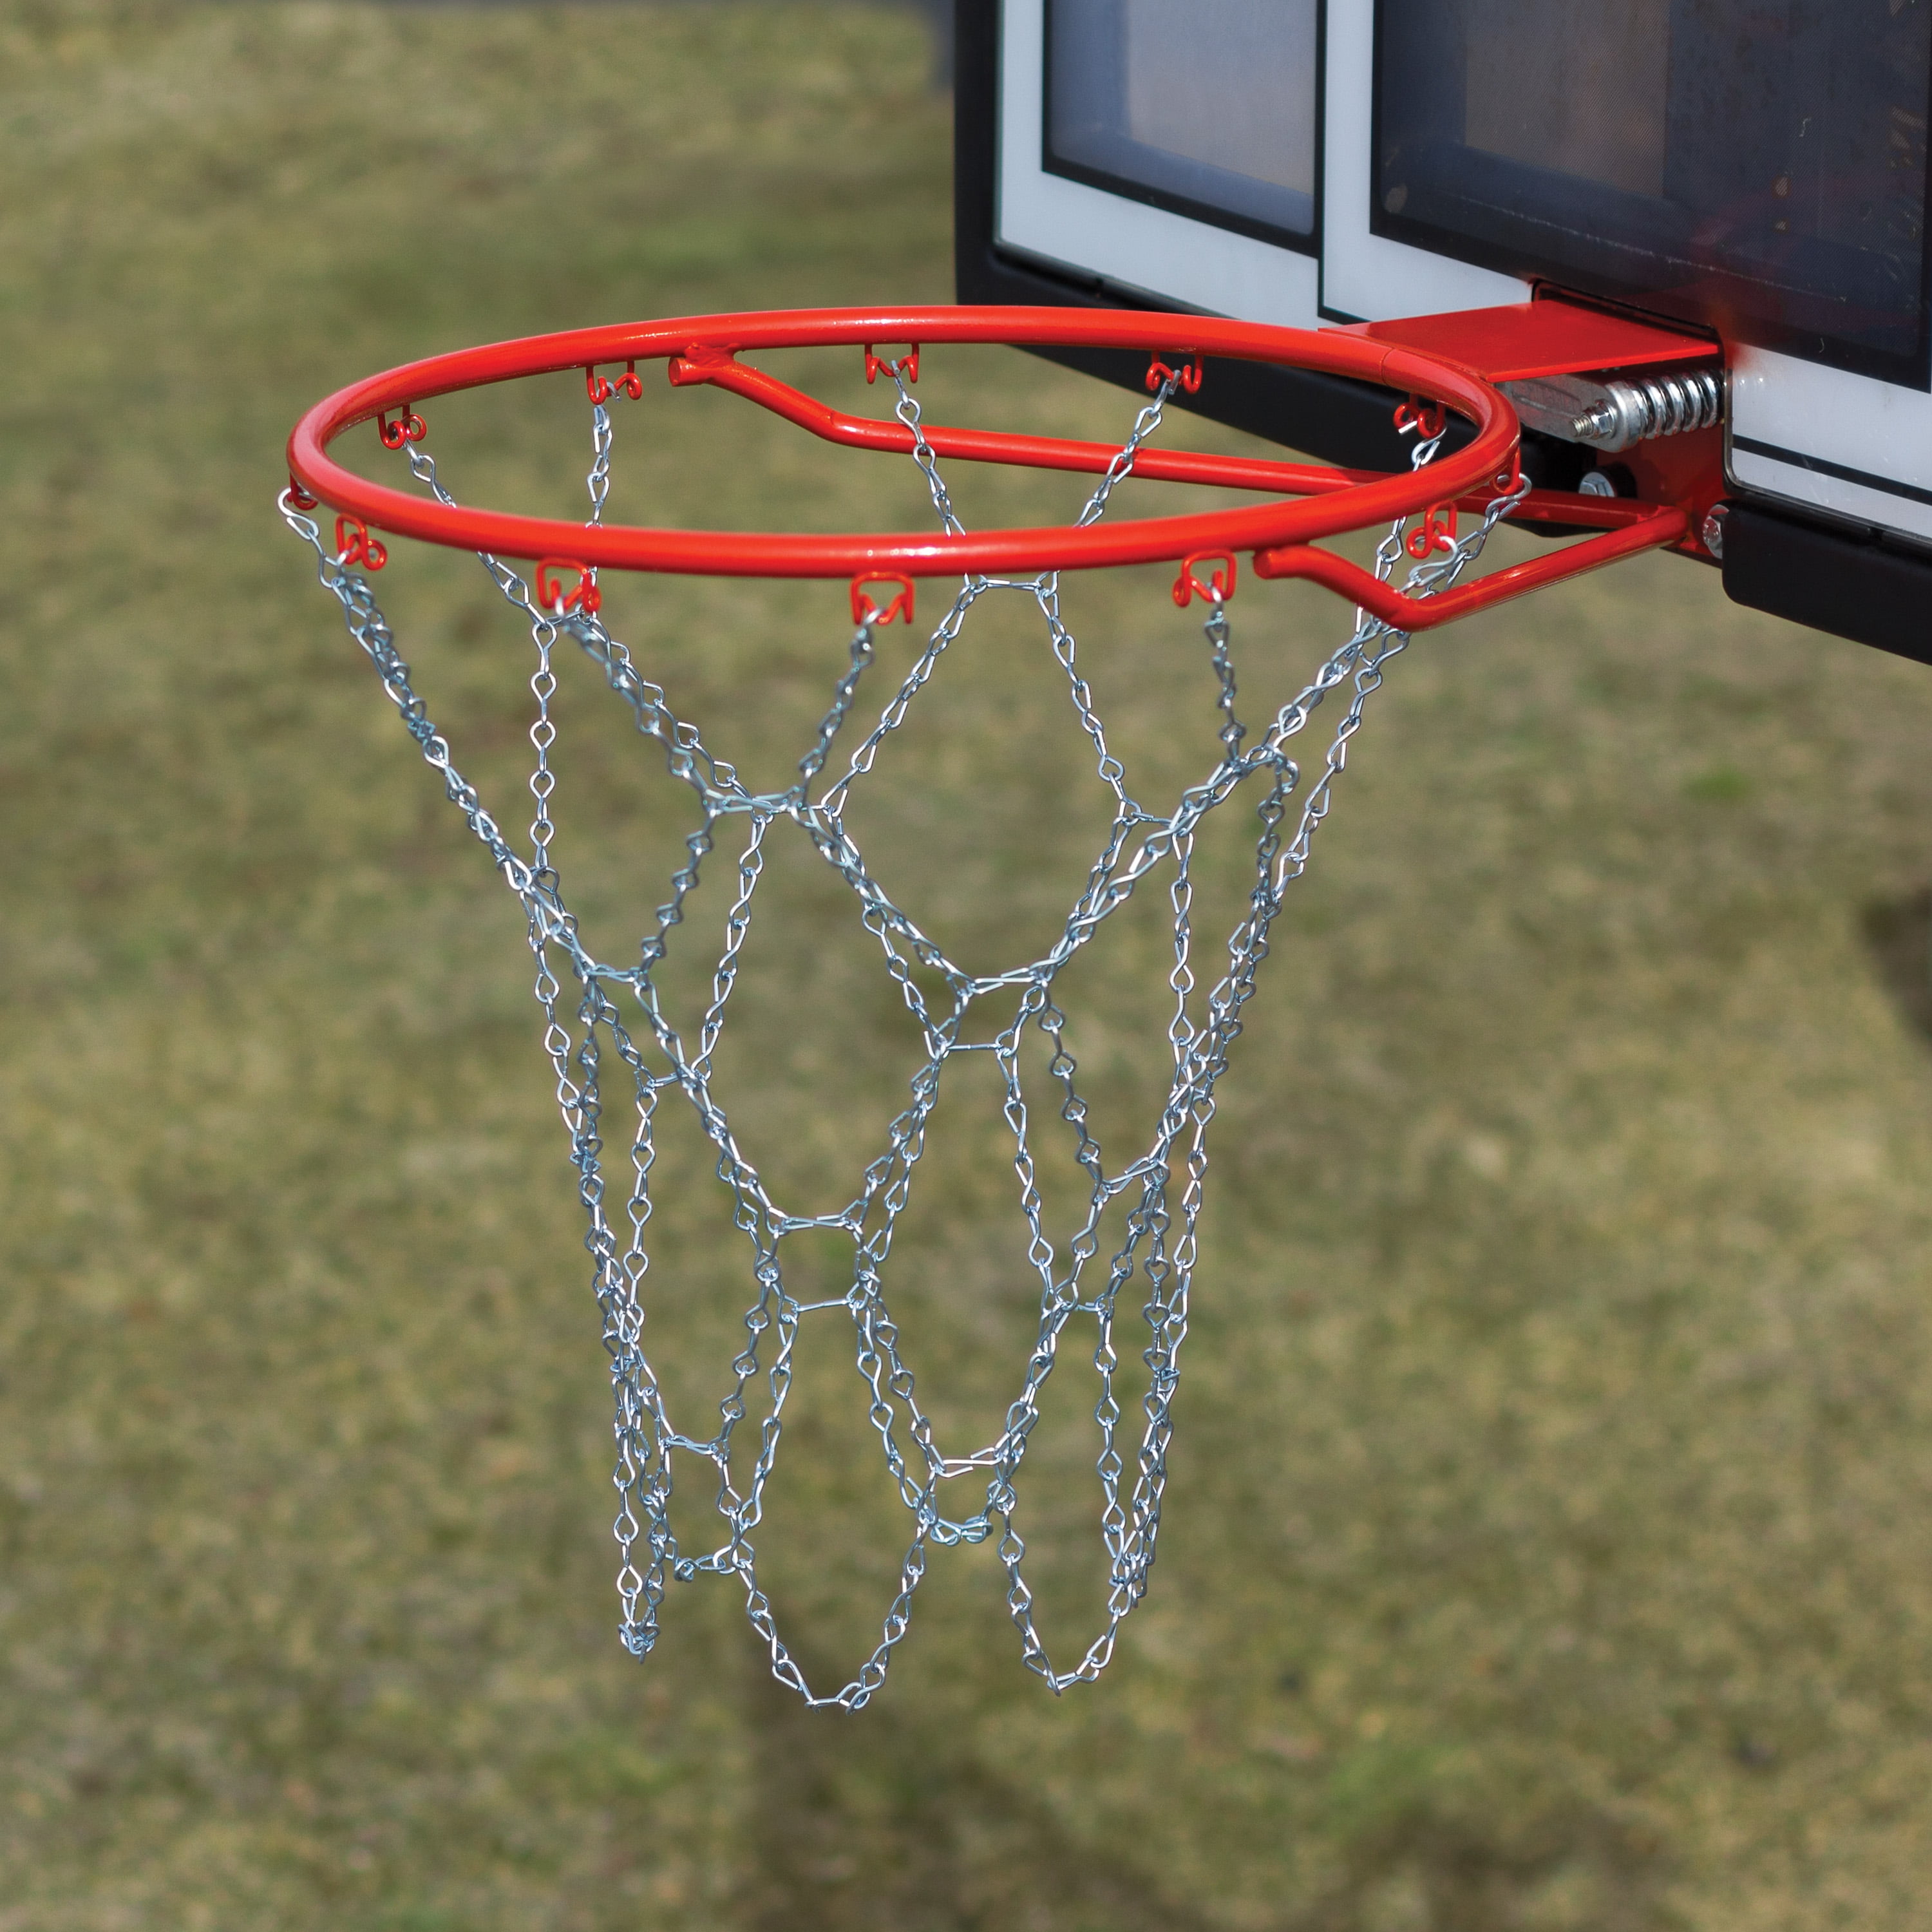 Heavy Duty Nylon Chain Basketball Net Galvanized Steel Strong Goal Rim Hoop Mesh 